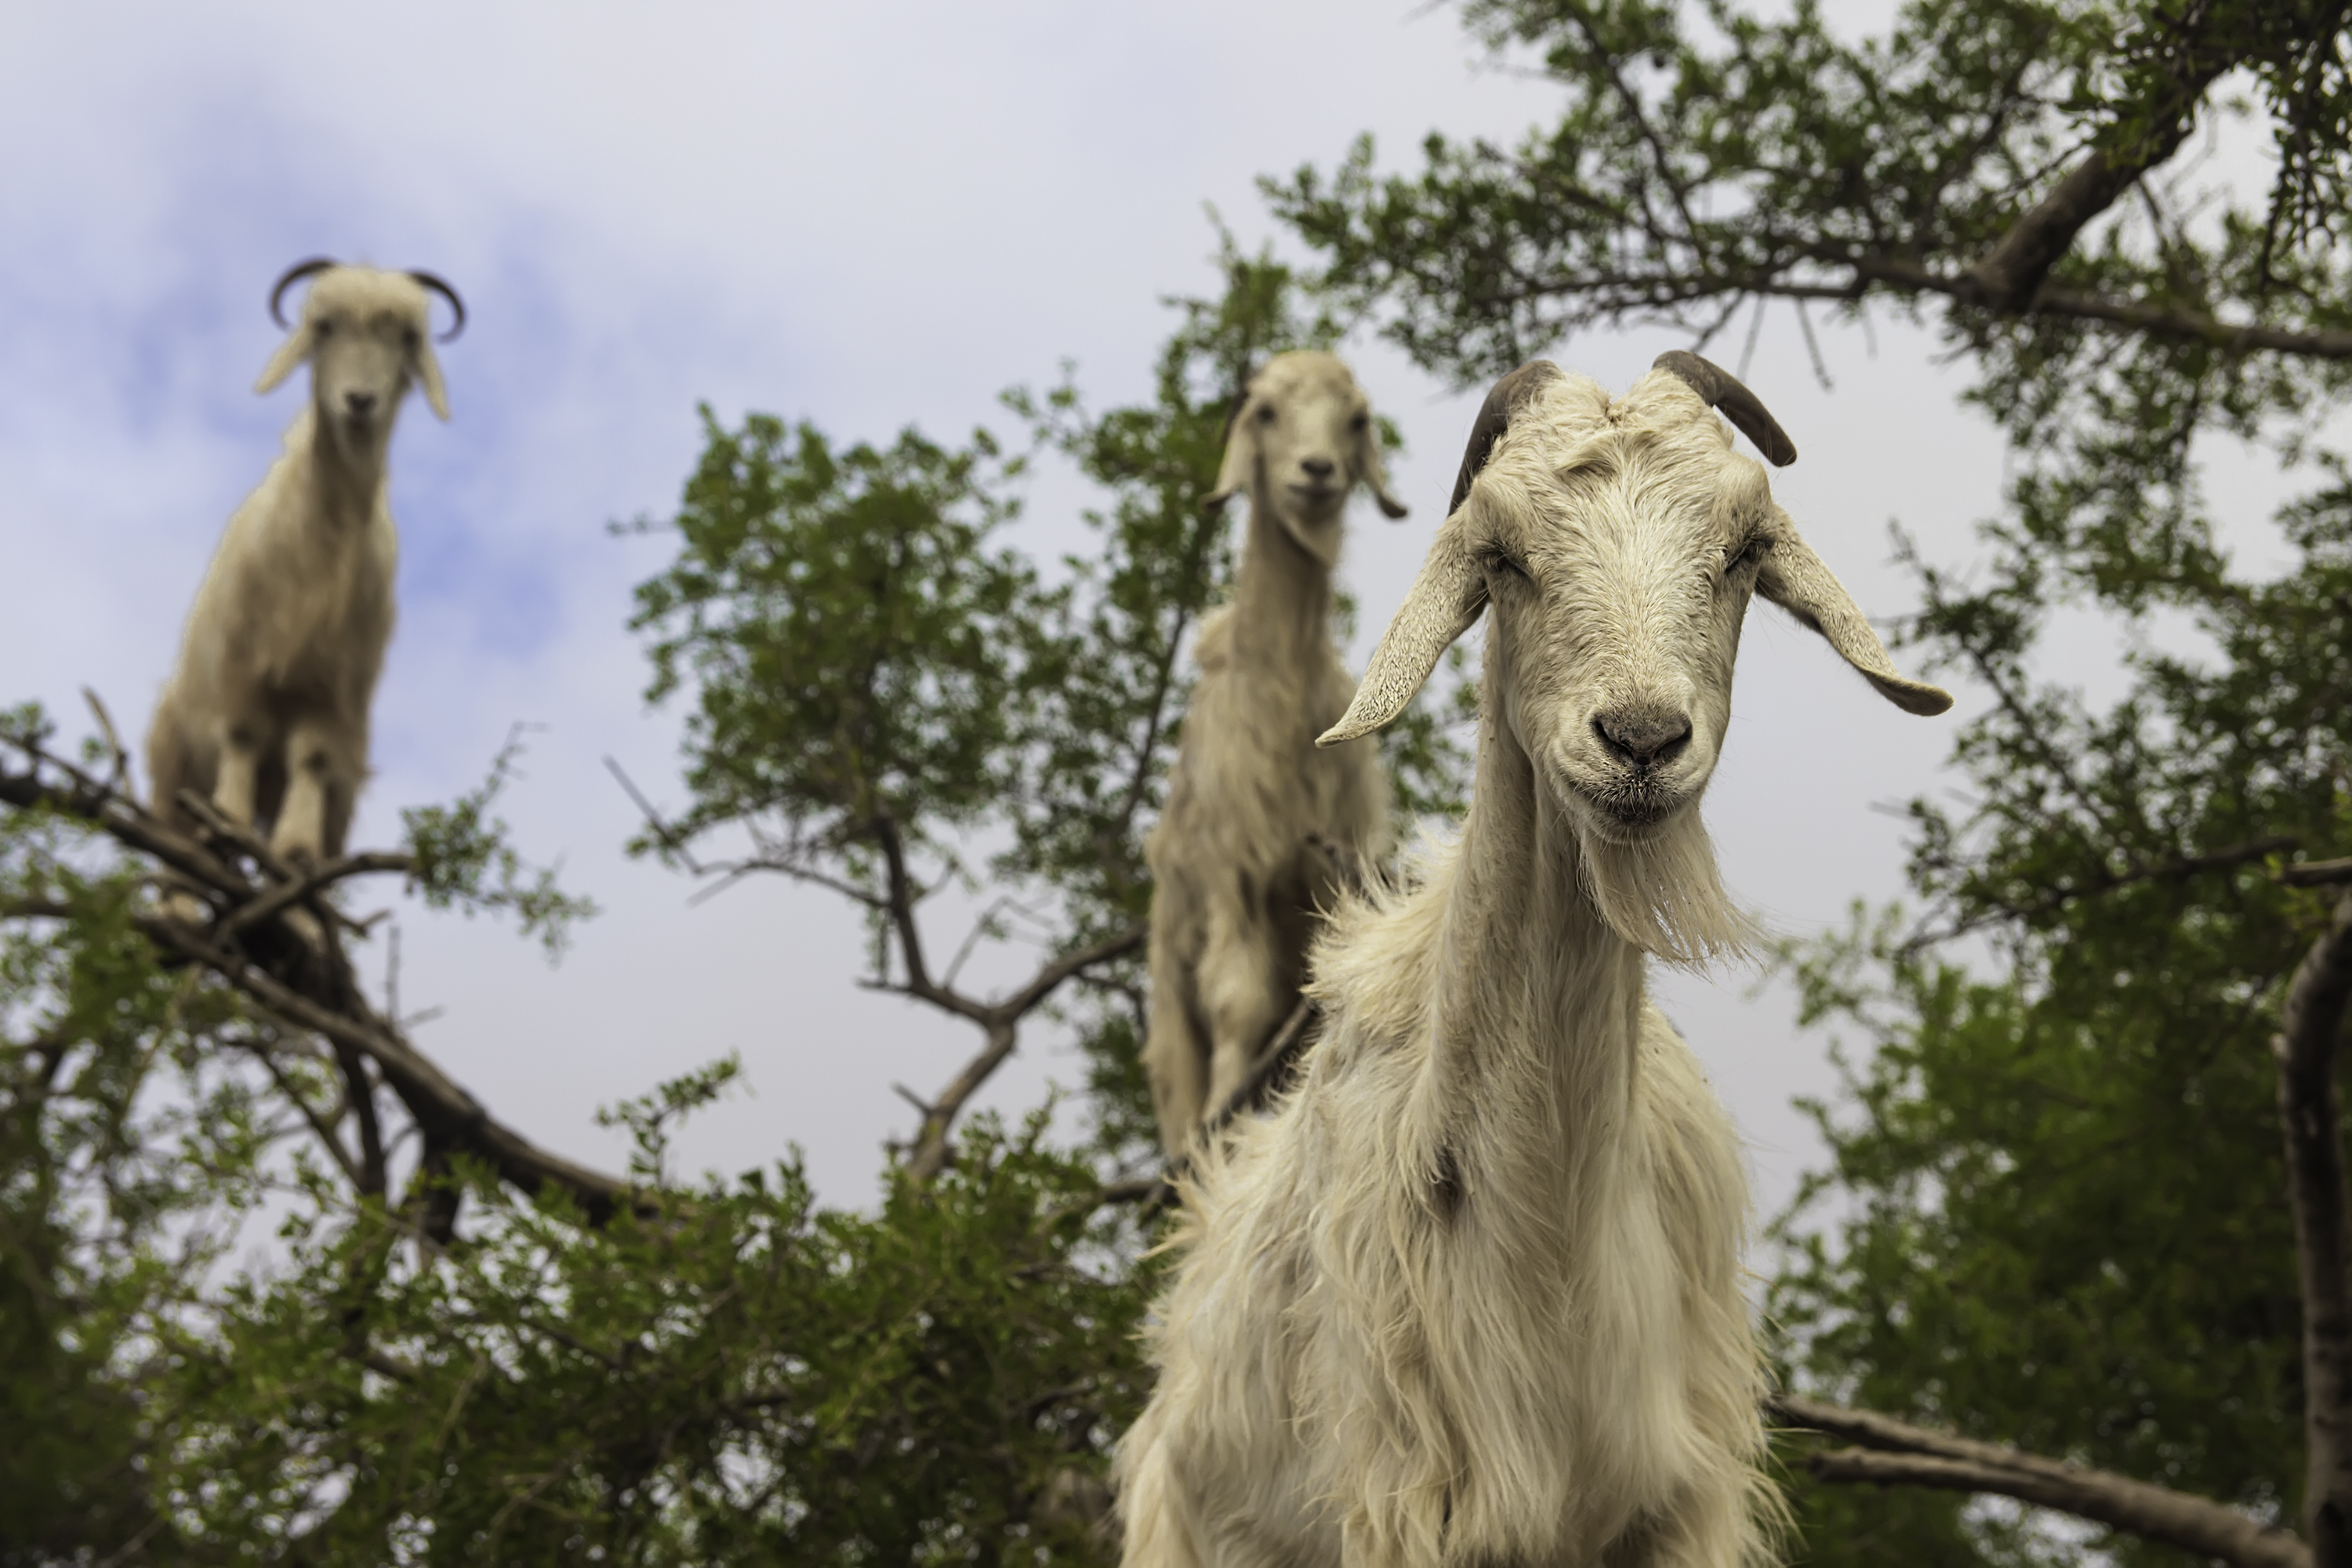 La increíble historia de las cabras que recortan árboles en Marruecos - 9